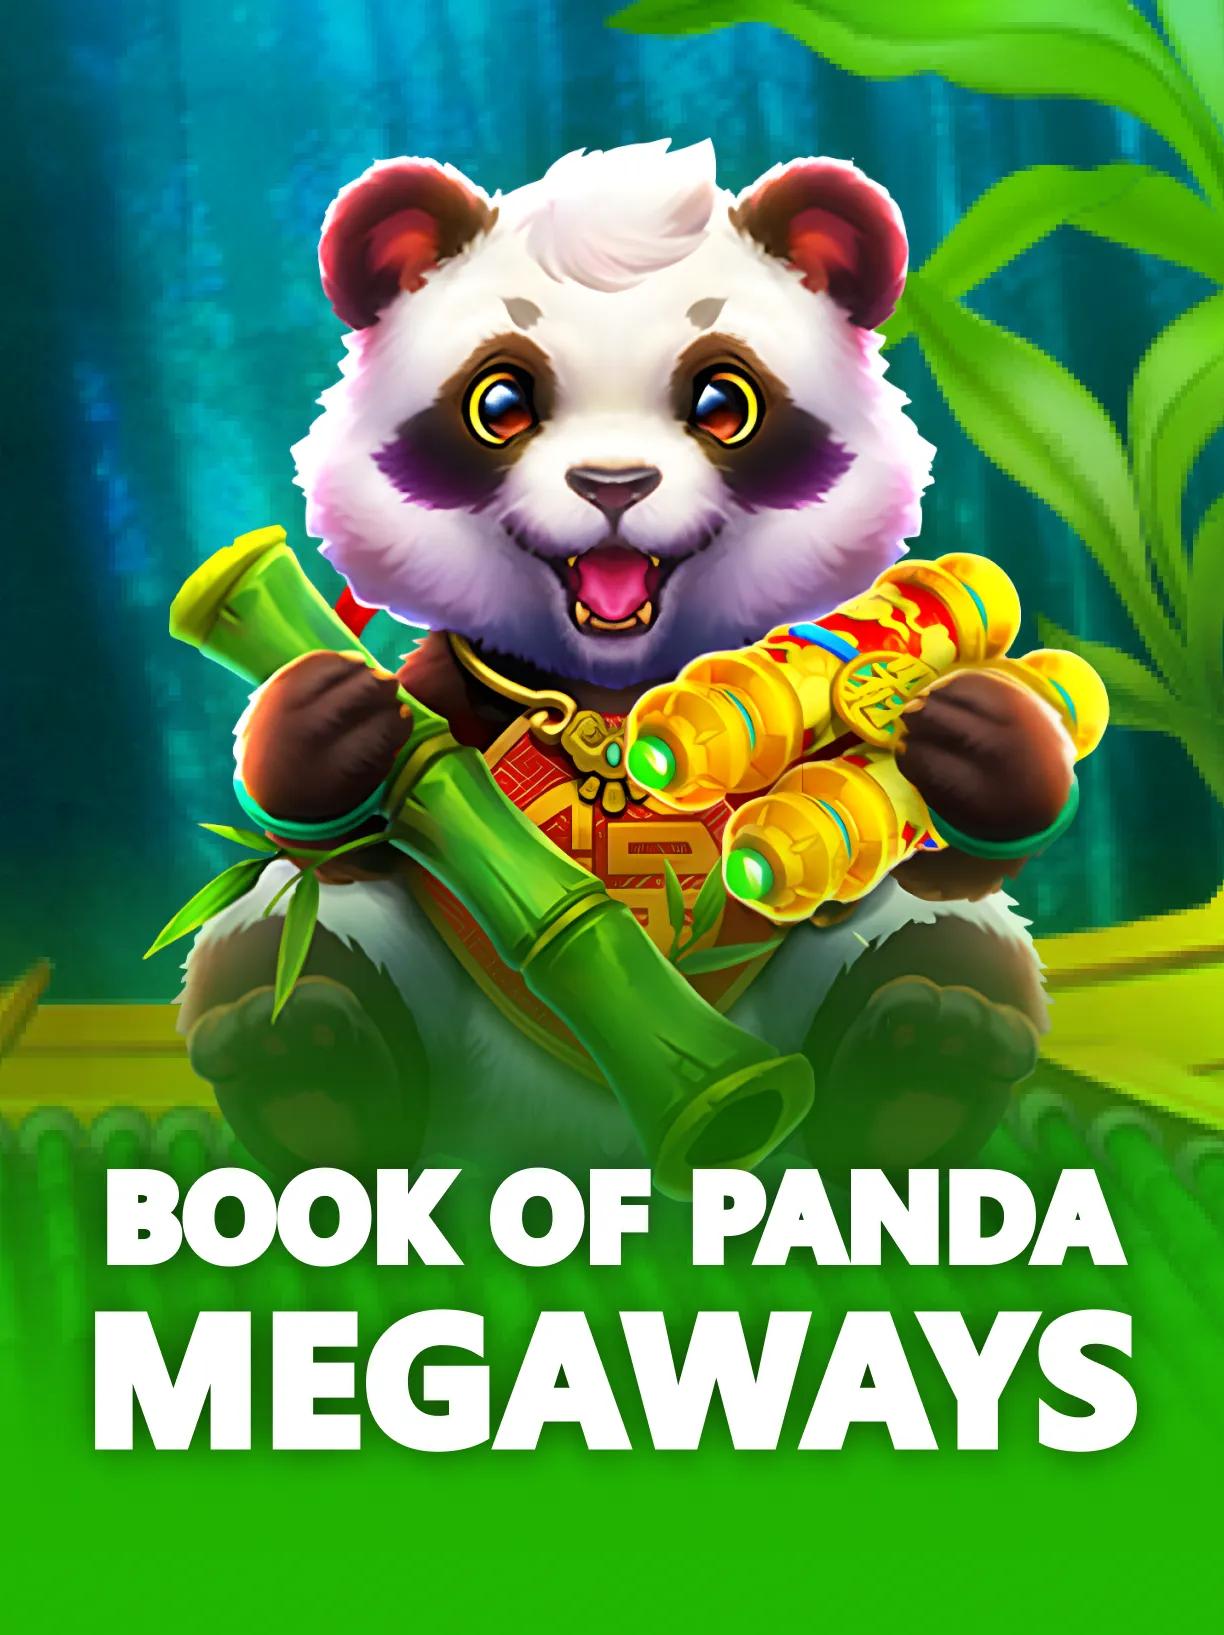 Book_of_Panda_Megaways_square.webp